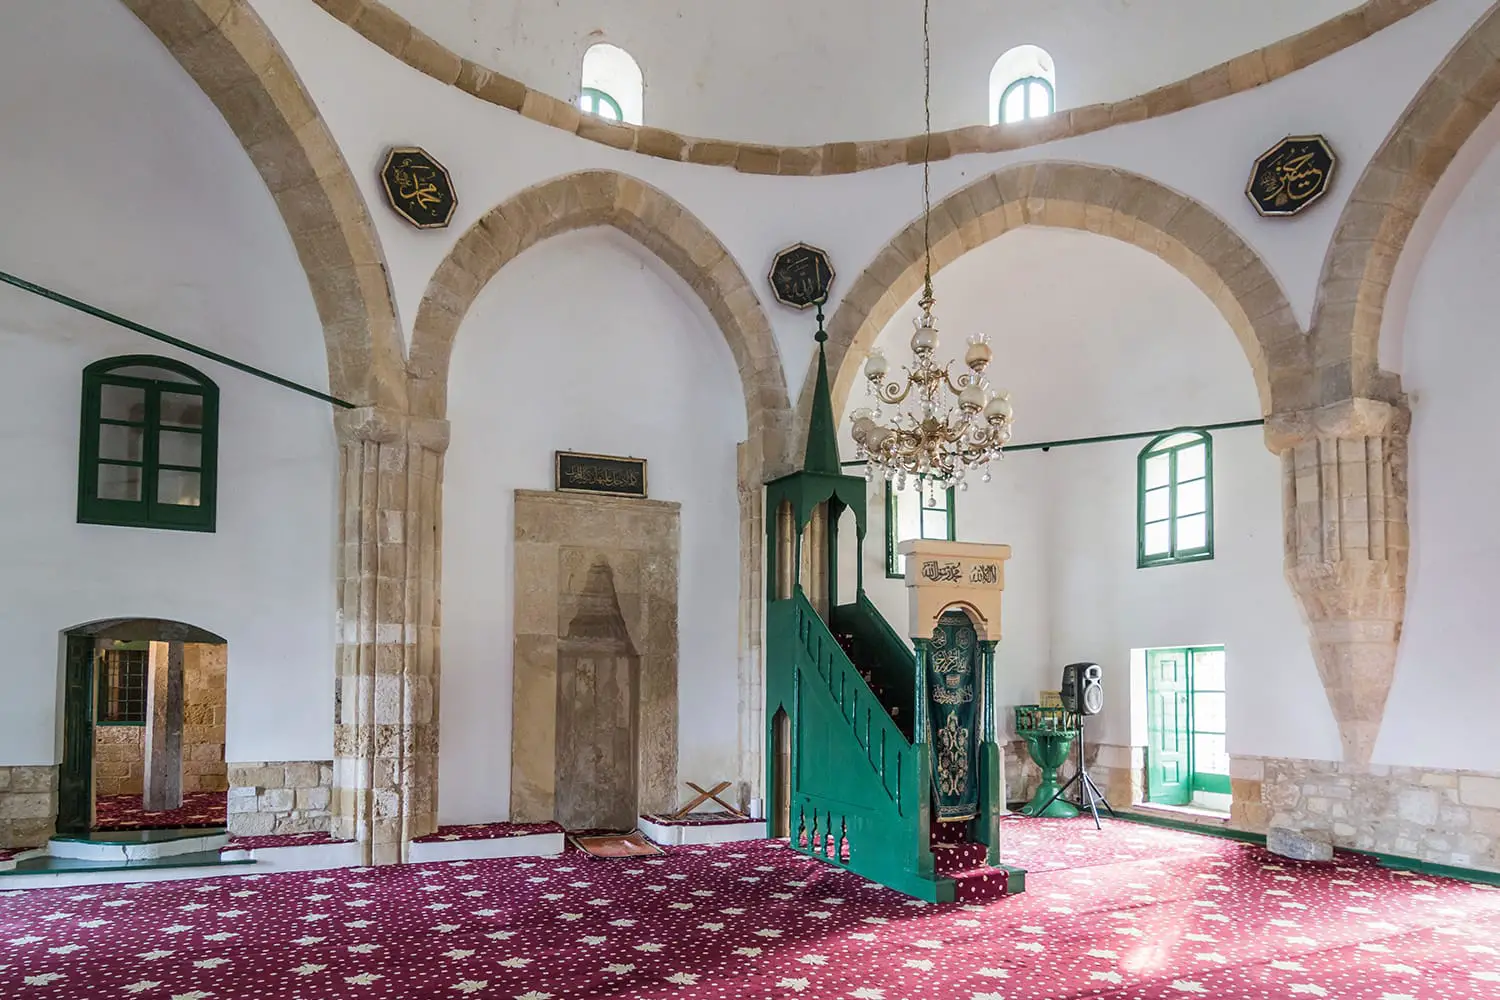 το mikhrab, το minbar και το εσωτερικό του τζαμιού Hala Sultan Tekke, ενός από τους πιο ιερούς ισλαμικούς χώρους λατρείας